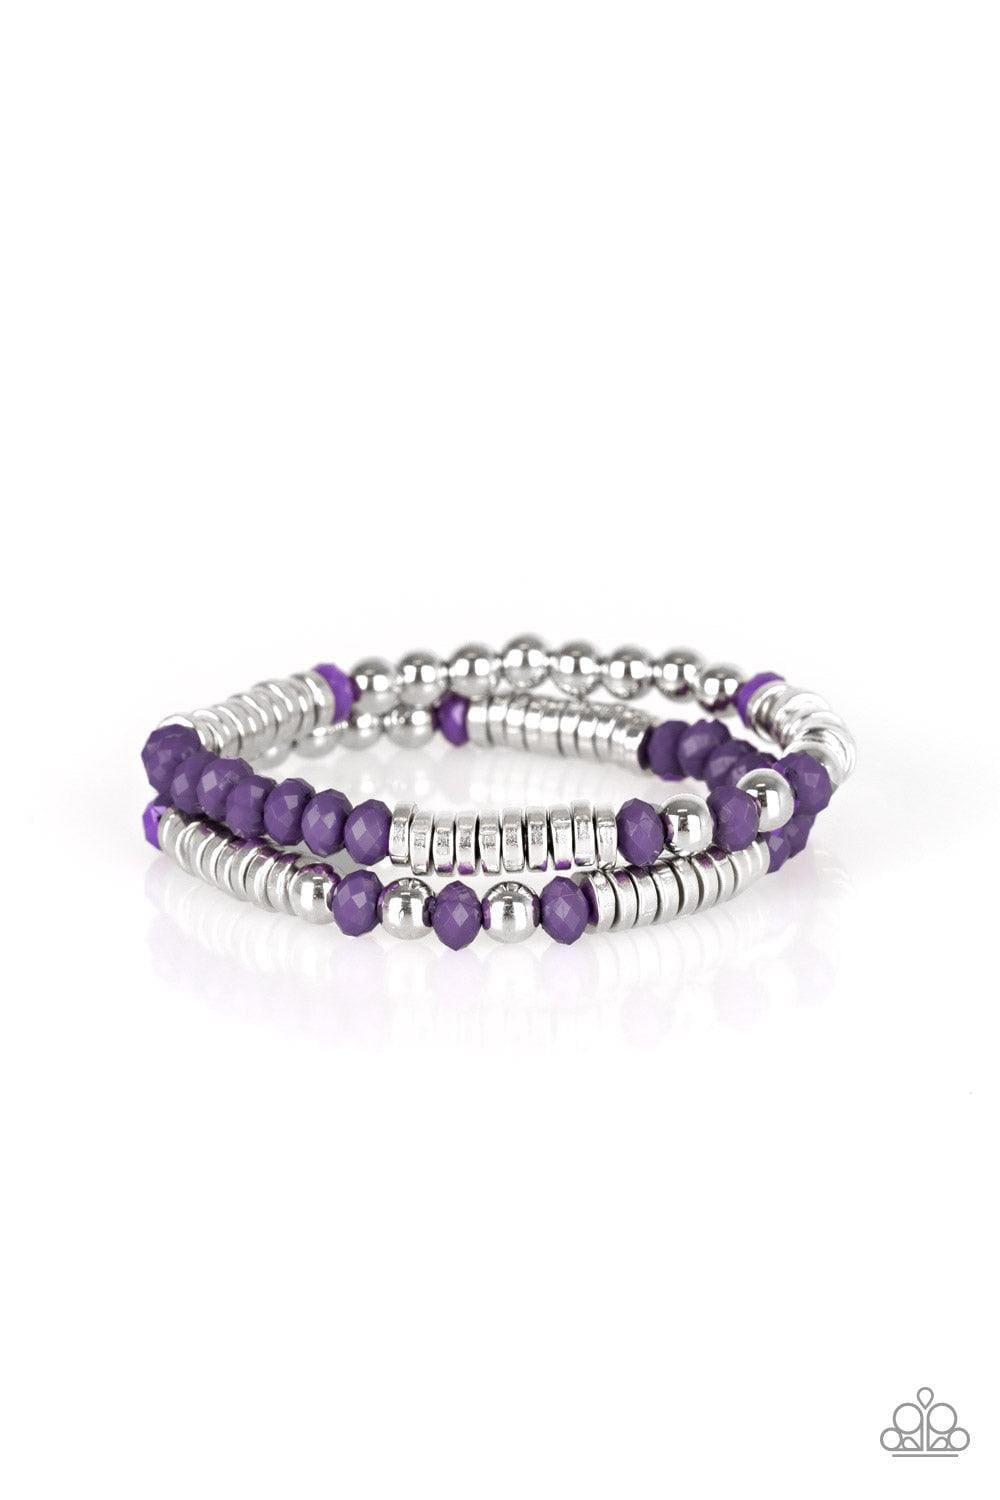 Paparazzi Accessories - Downright Dressy - Purple Bracelet - Bling by JessieK